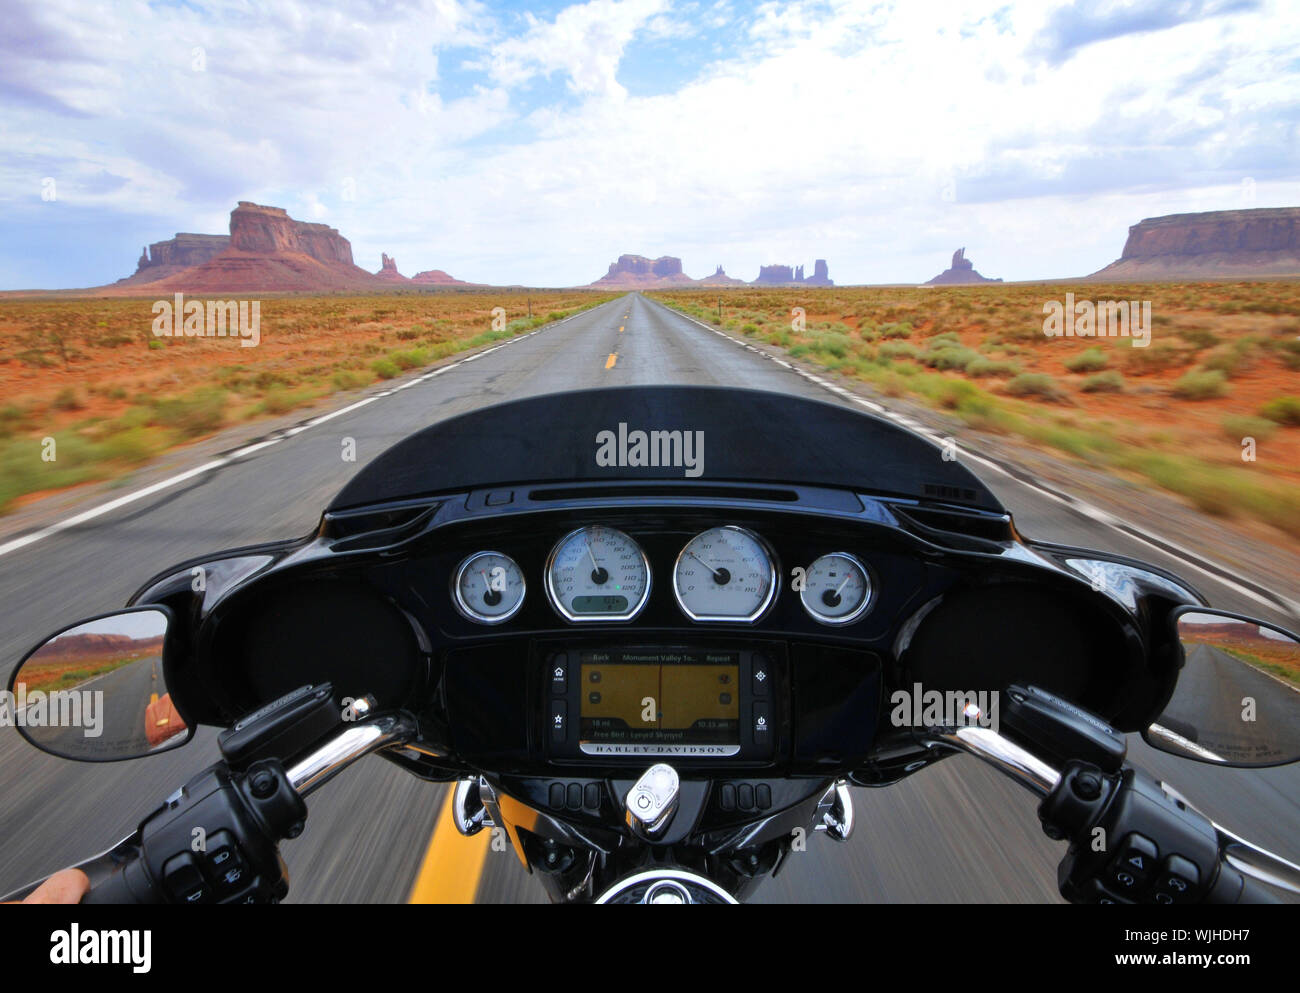 Manèges une Harley-Davidson le long de la célèbre Route panoramique U.S163, Monument Valley sur la frontière de l'Utah, Arizona USA écouter Freebird, Lynyrd Skynyrd. Banque D'Images